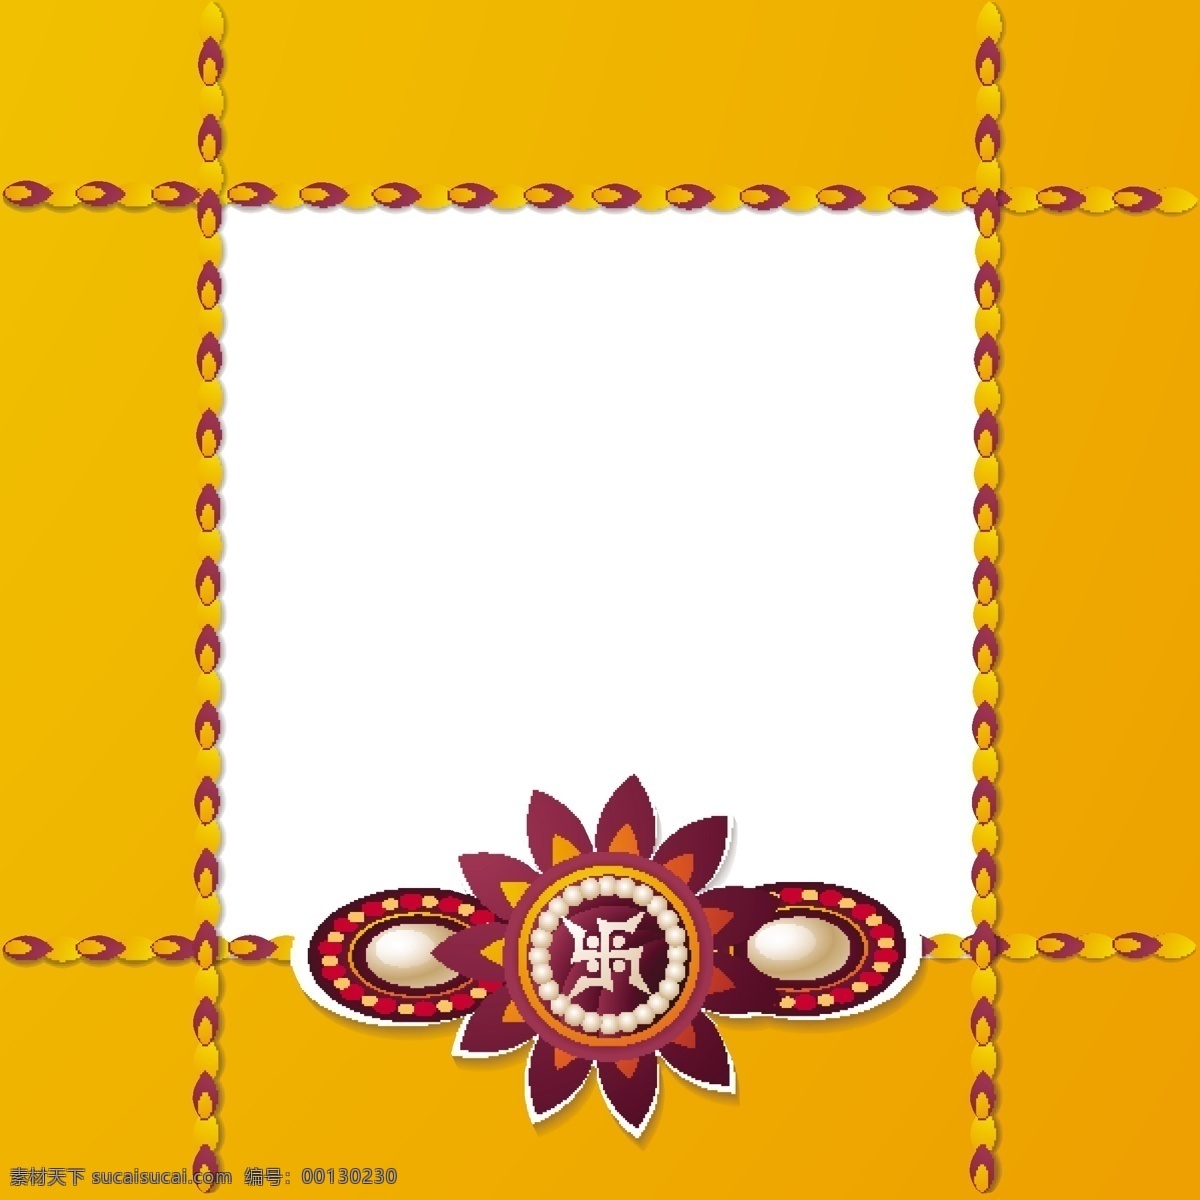 橙色 兄妹 节 框架 背景 卡片 印度 庆祝 宗教 节日 装饰 橙色背景 文化 线 问候 传统 印度教 关系 姐妹